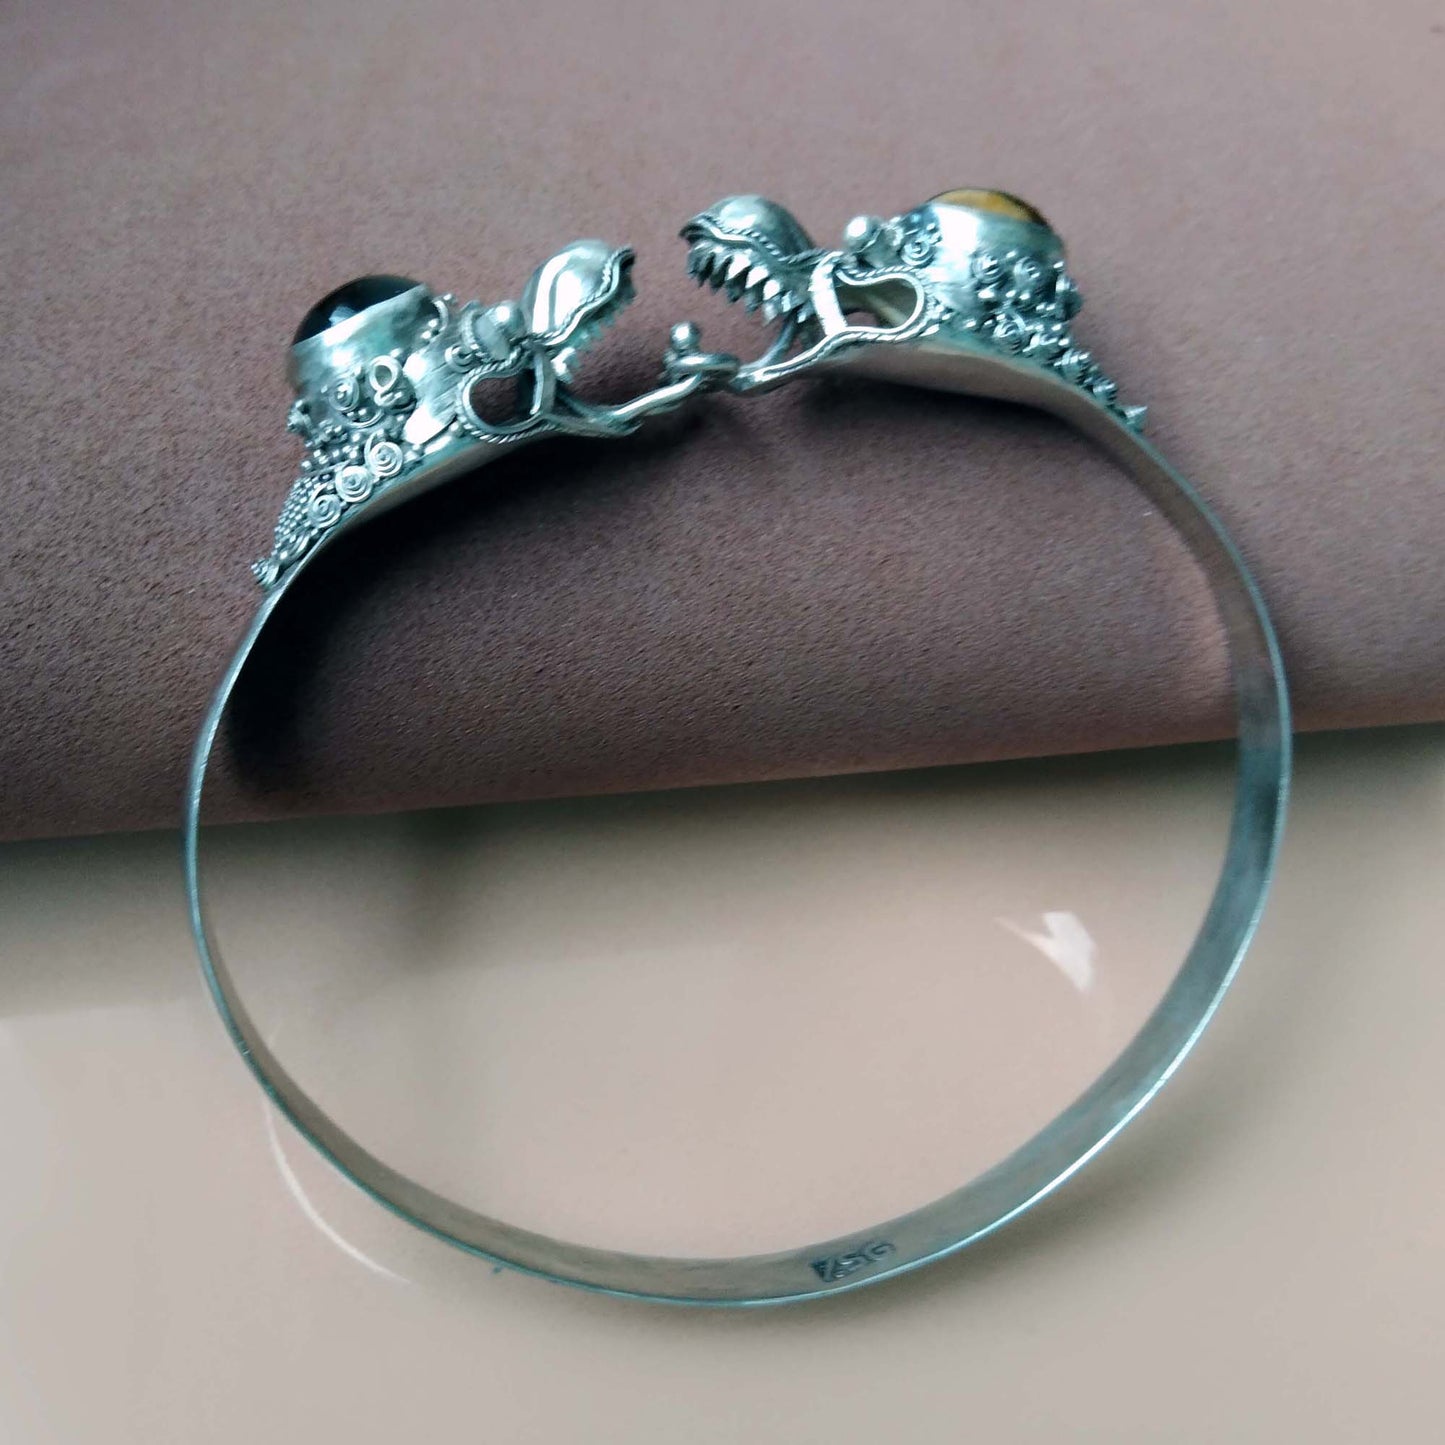 950 Silver Double Dragon Bangle, Tigers Eye Stone Bracelet, Vintage Artisan Jewelry Bali